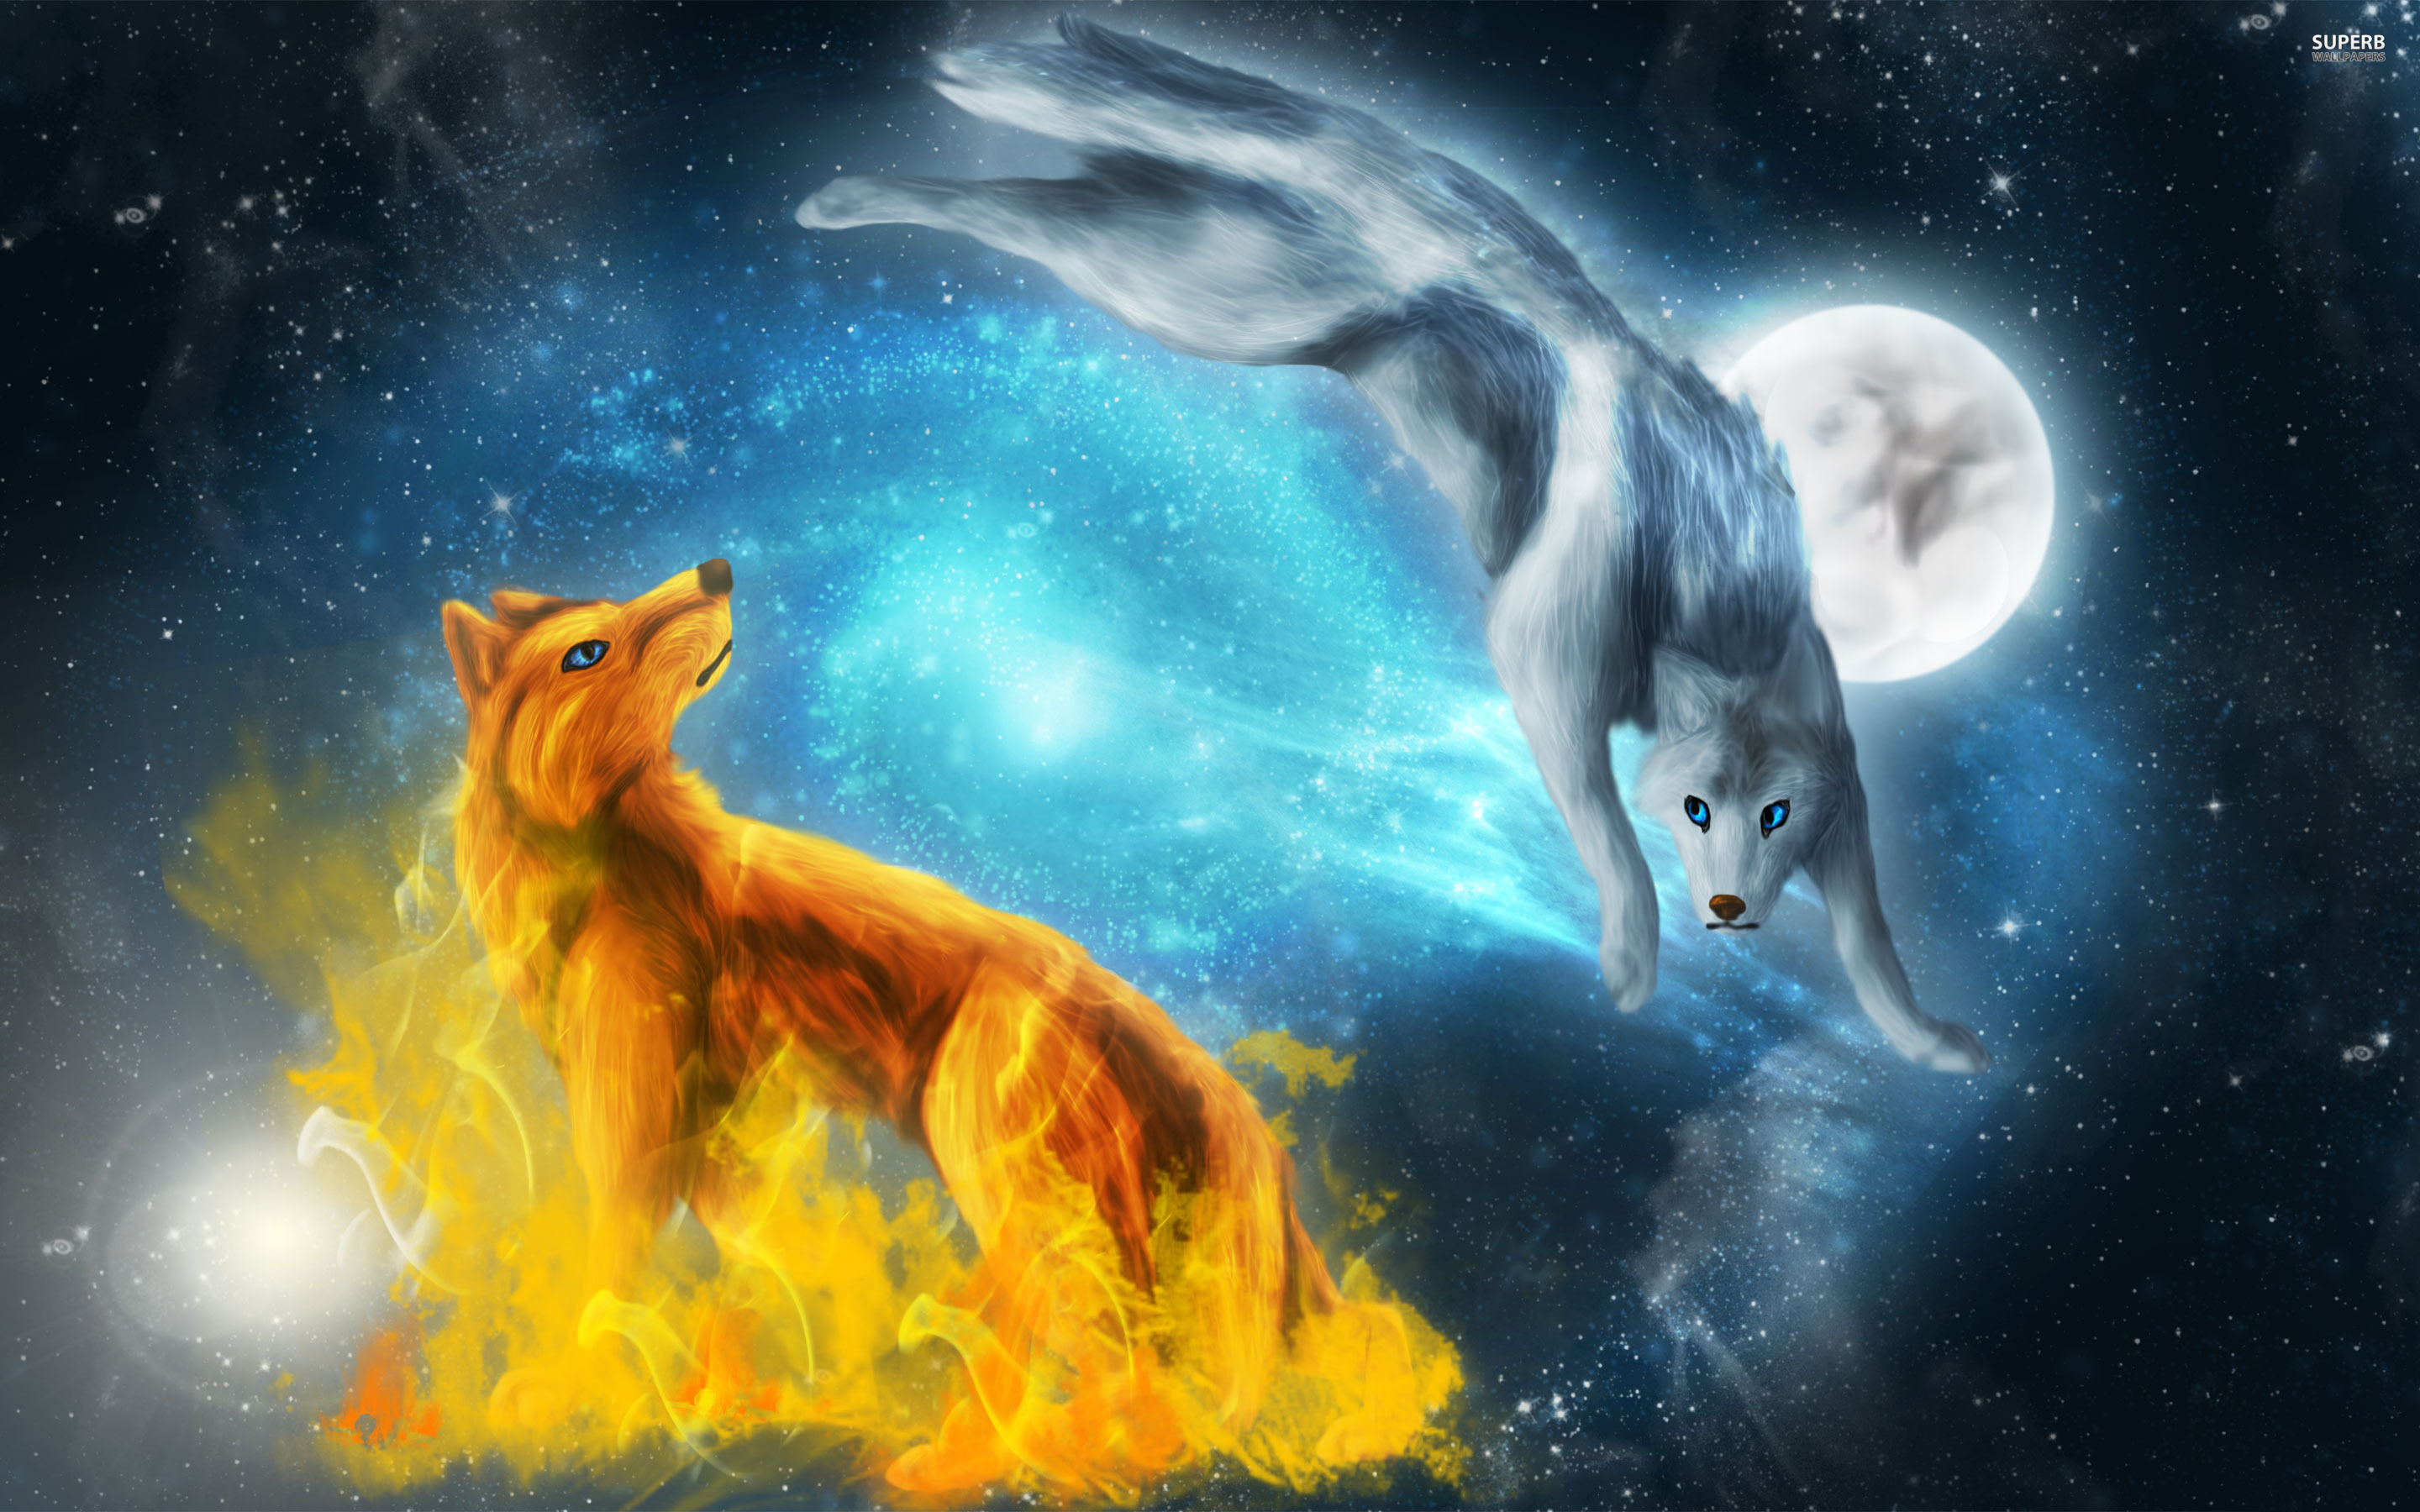 Amazing Wolves image amazing wolves 36709371 2880 1800png